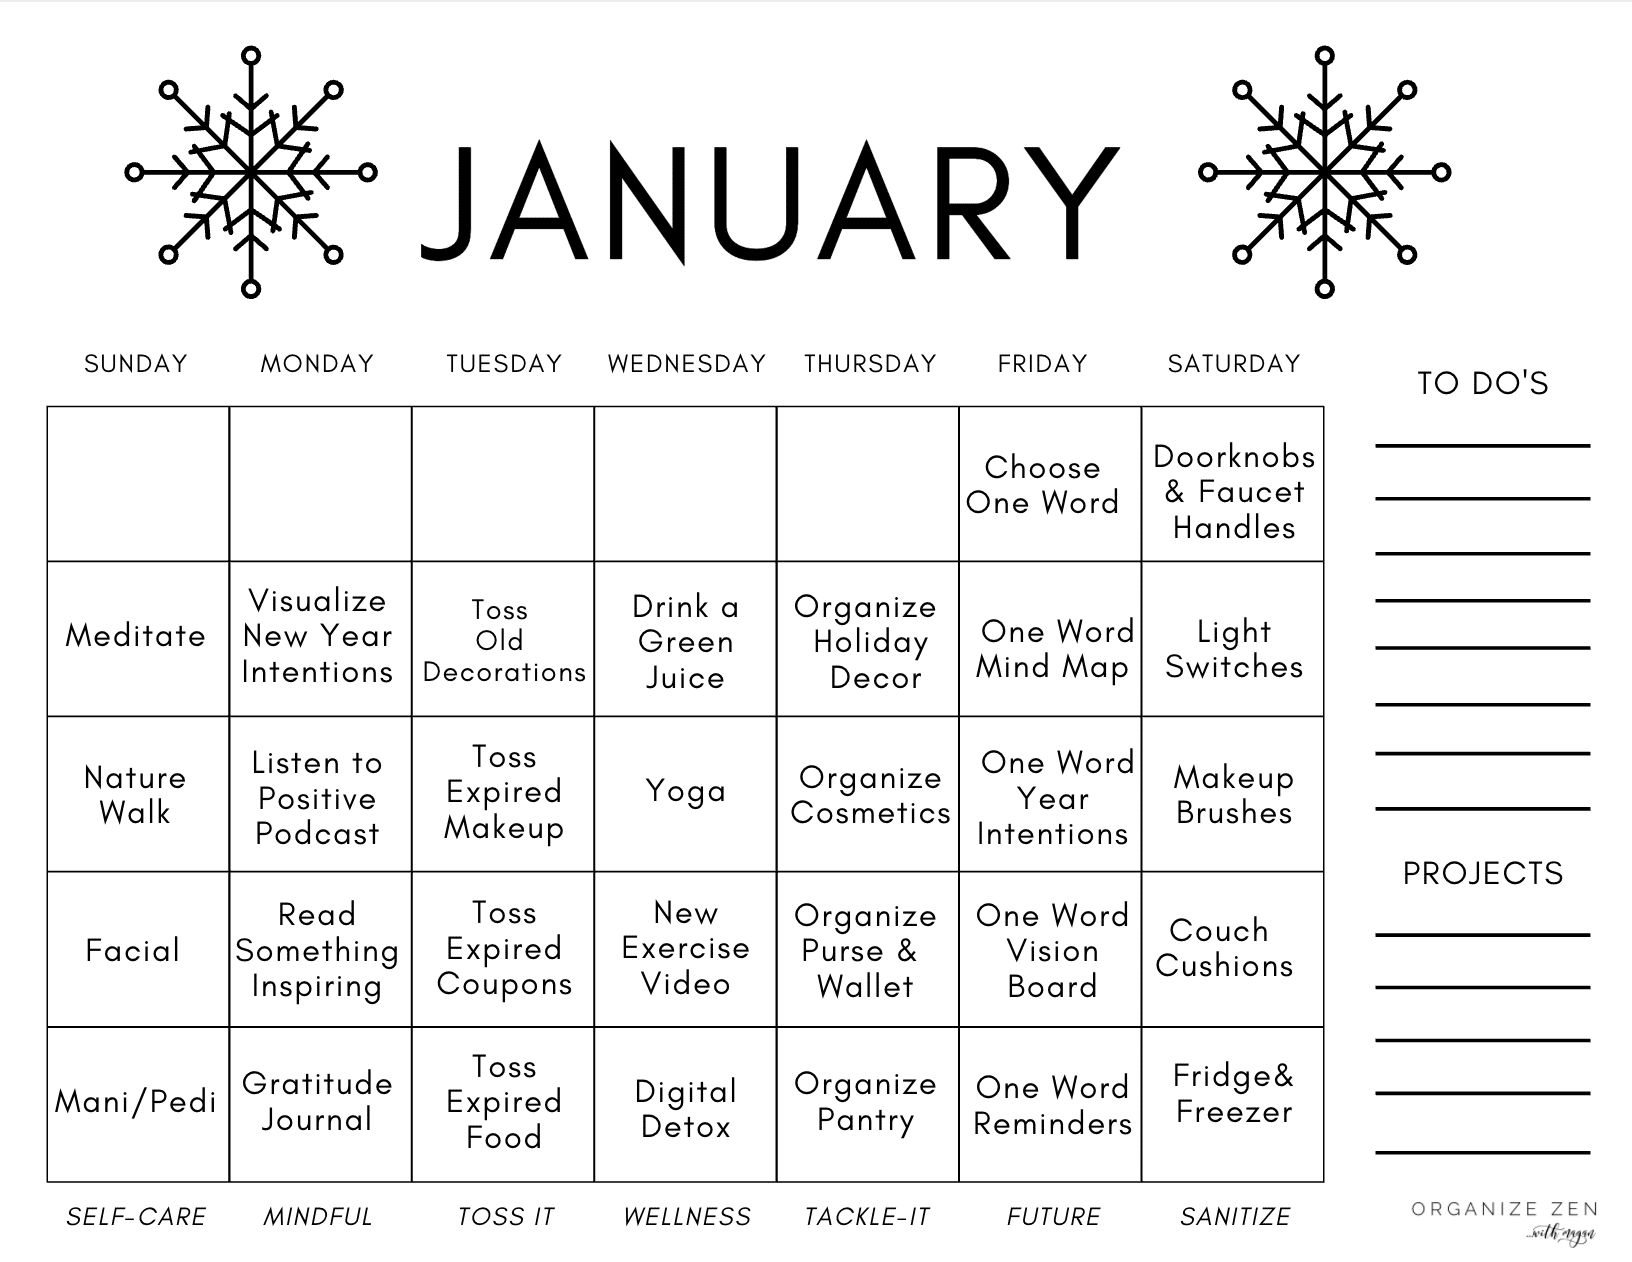 January Calendar with themed days